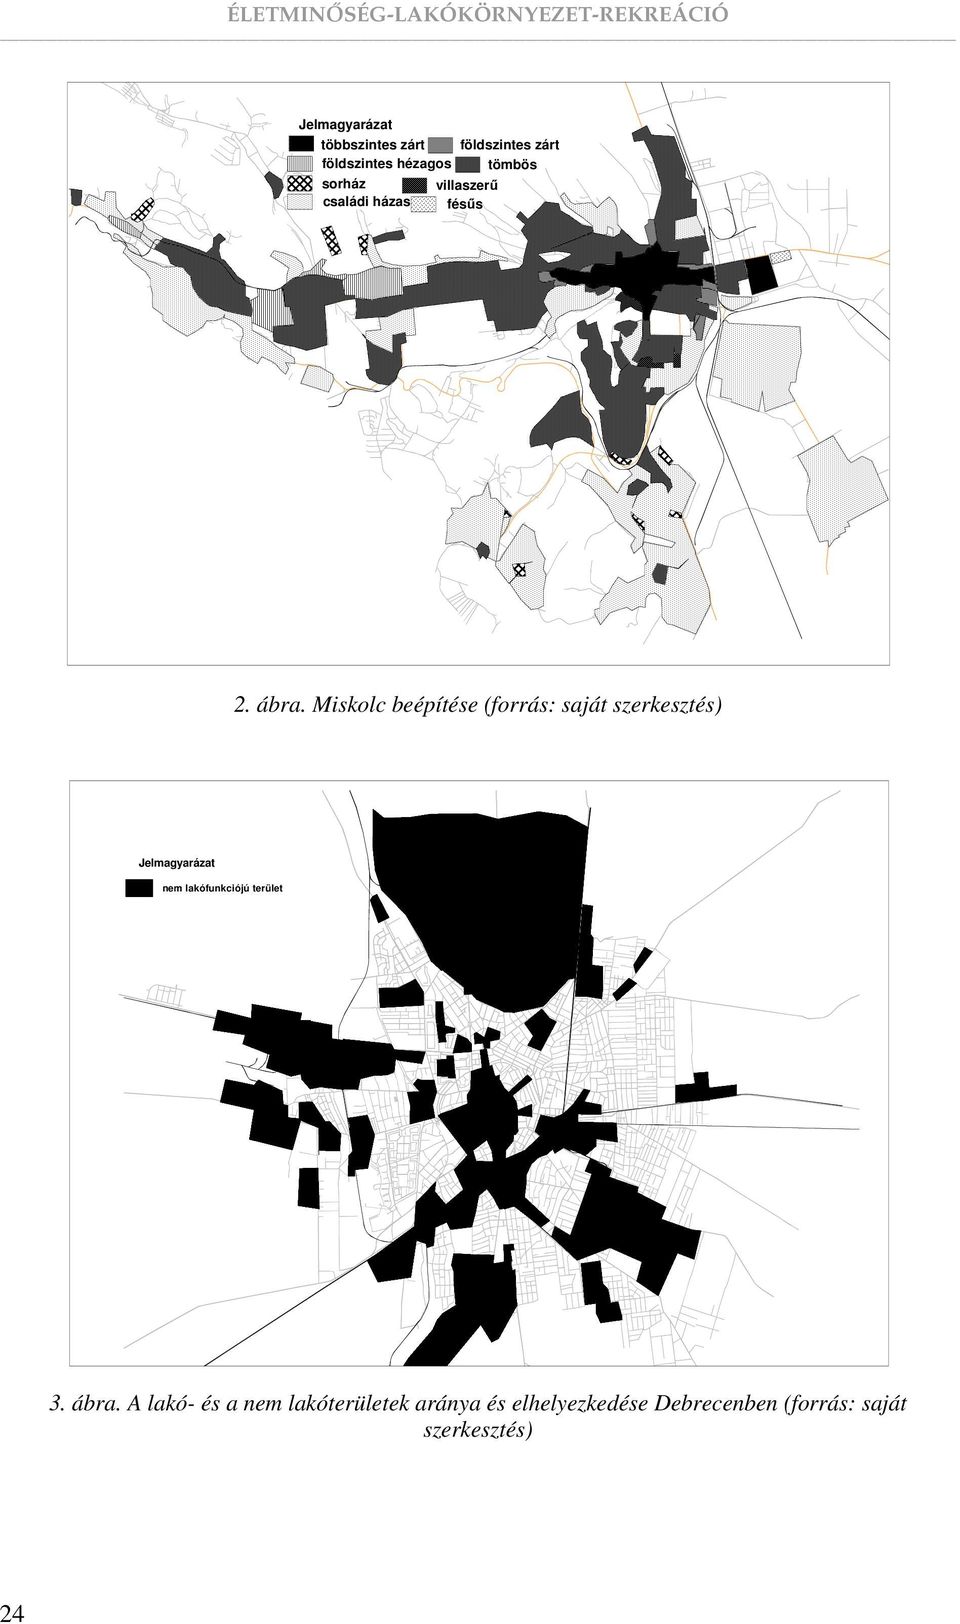 Miskolc beépítése (forrás: saját szerkesztés) nem lakófunkciójú terület